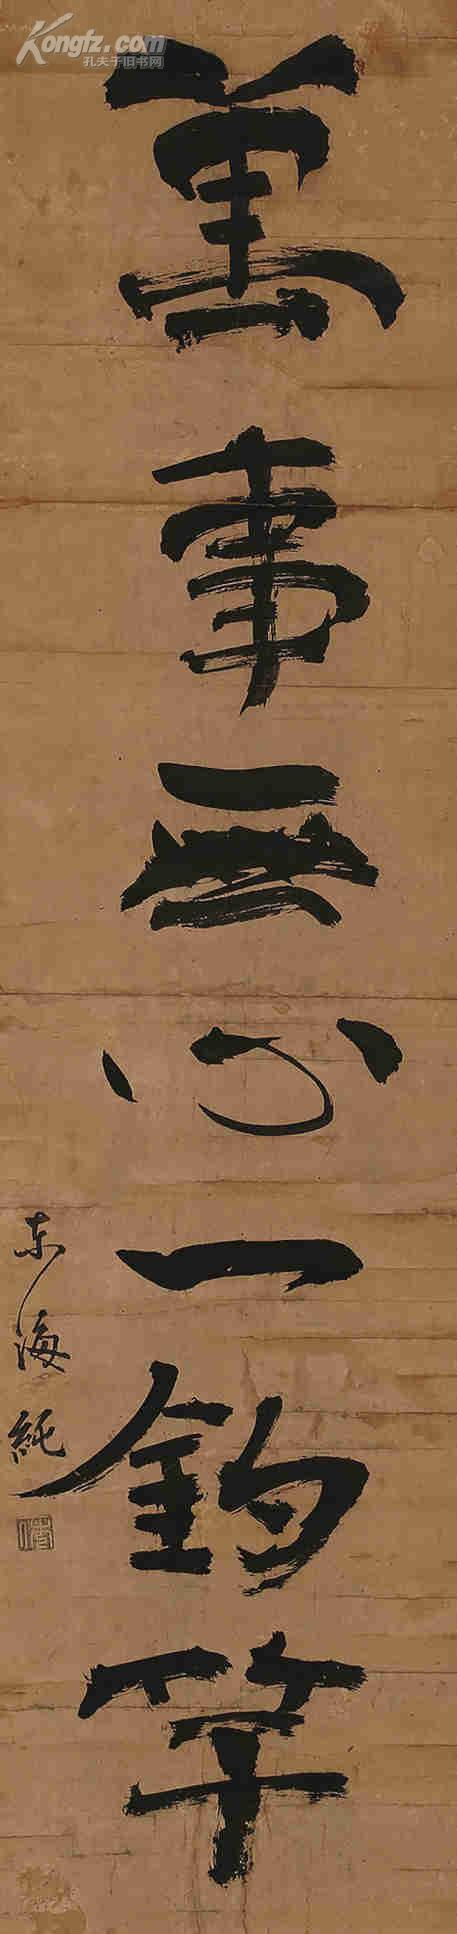 拍品详情 拍品大图 一休宗纯(1394-1481 行书条幅 滚动鼠标滚轴